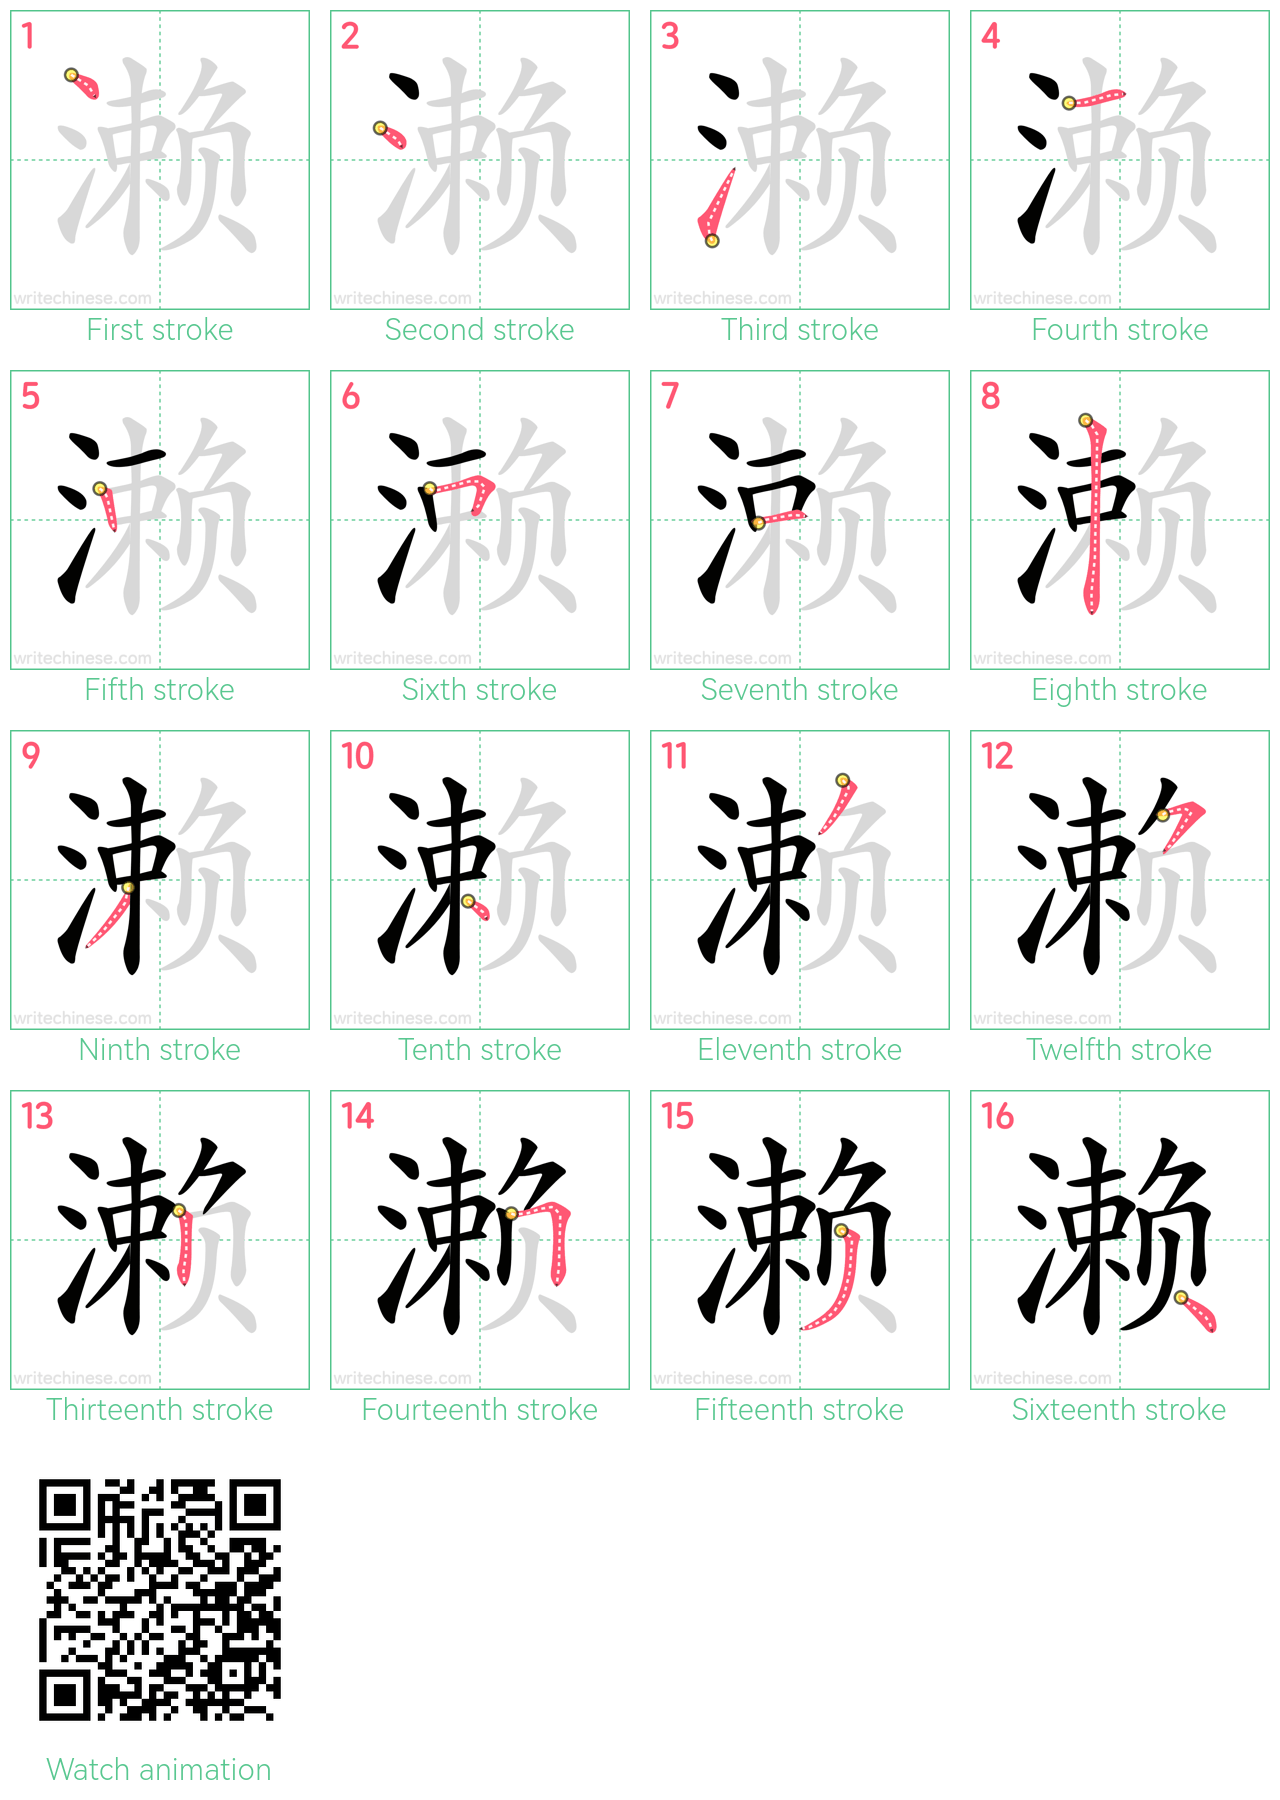 濑 step-by-step stroke order diagrams